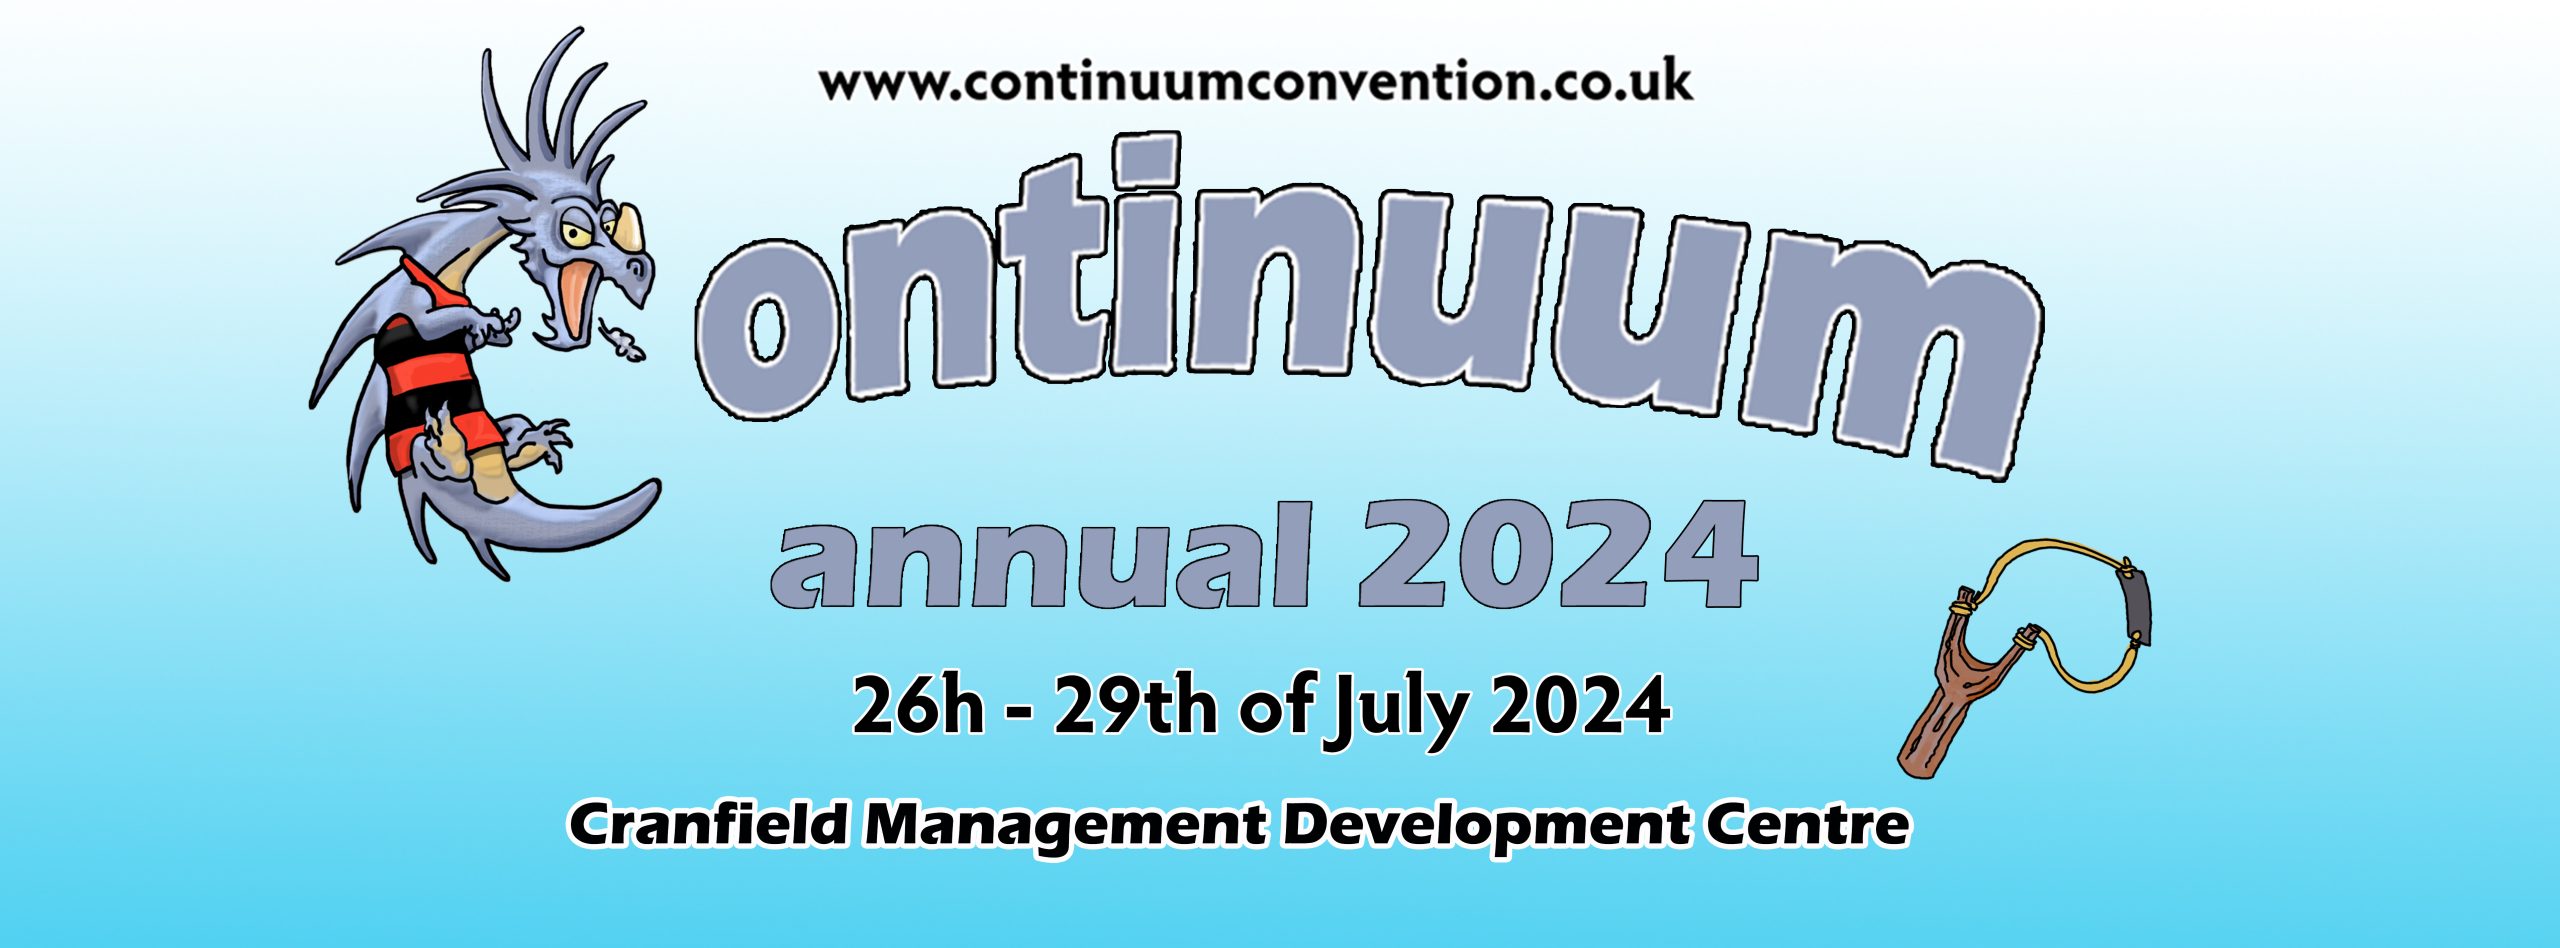 Continuum UK Games Convention